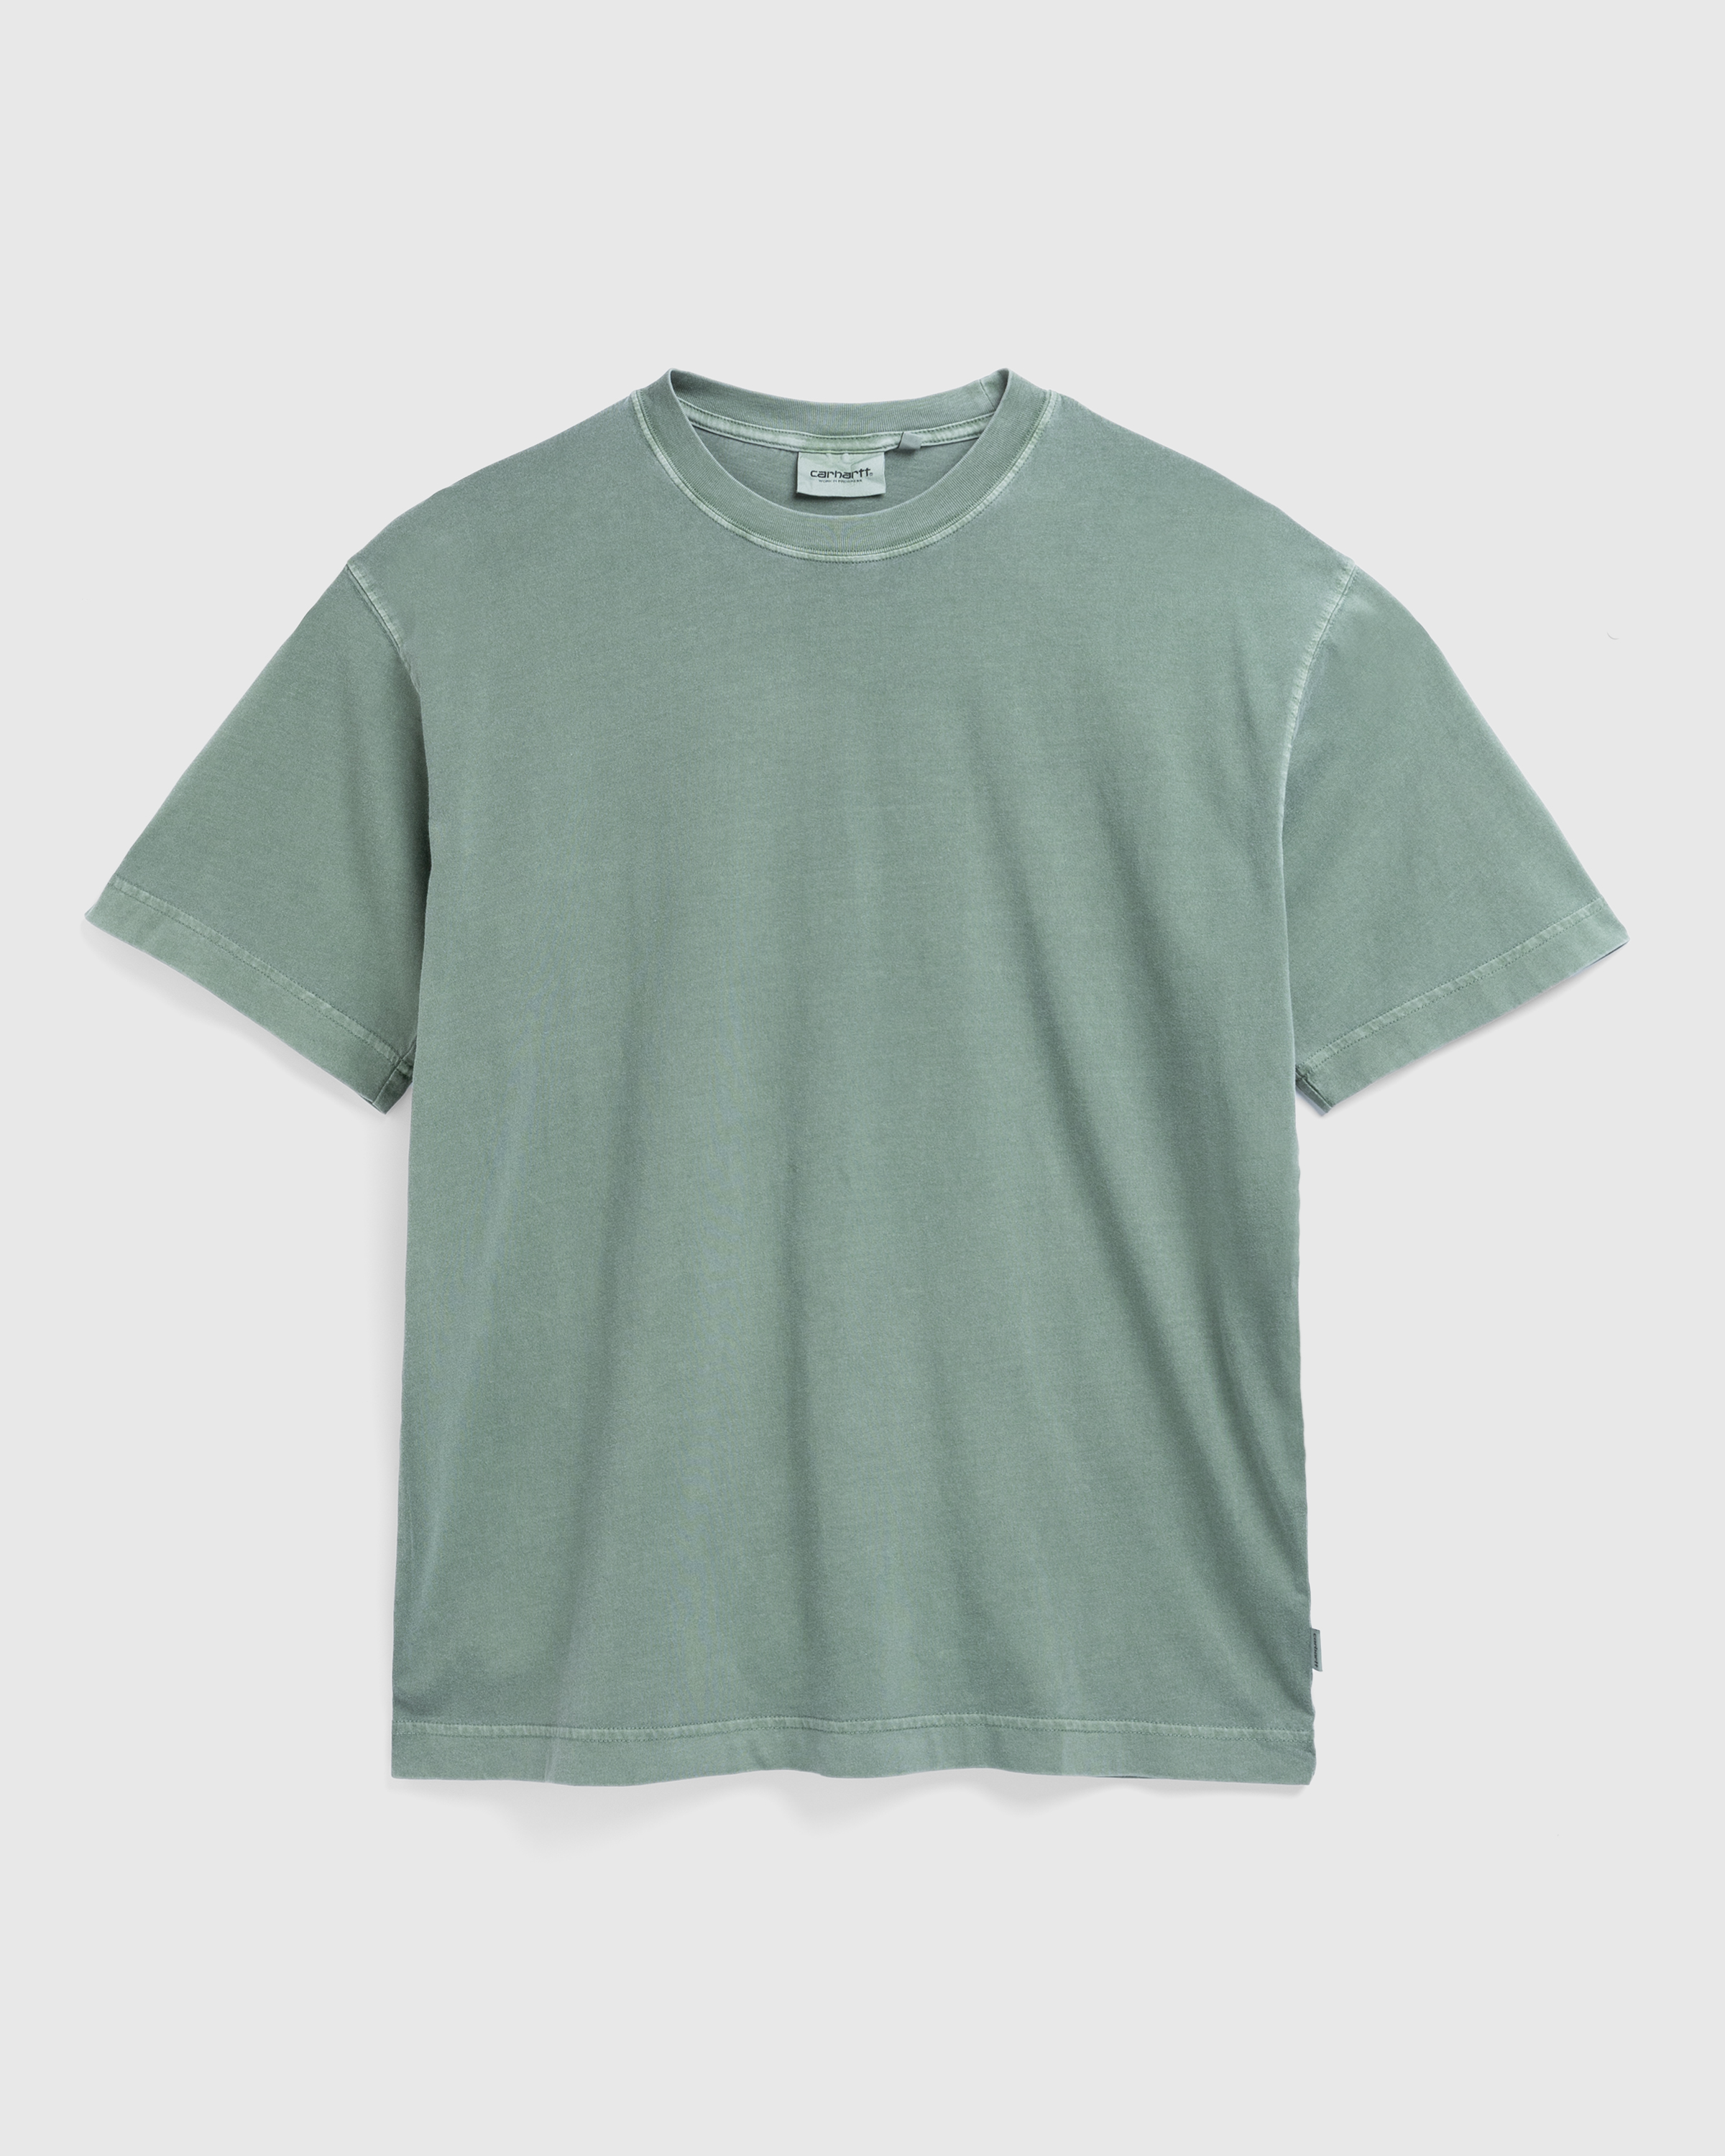 Carhartt WIP – Dune T-Shirt Park/Garment Dyed - Tops - Green - Image 1